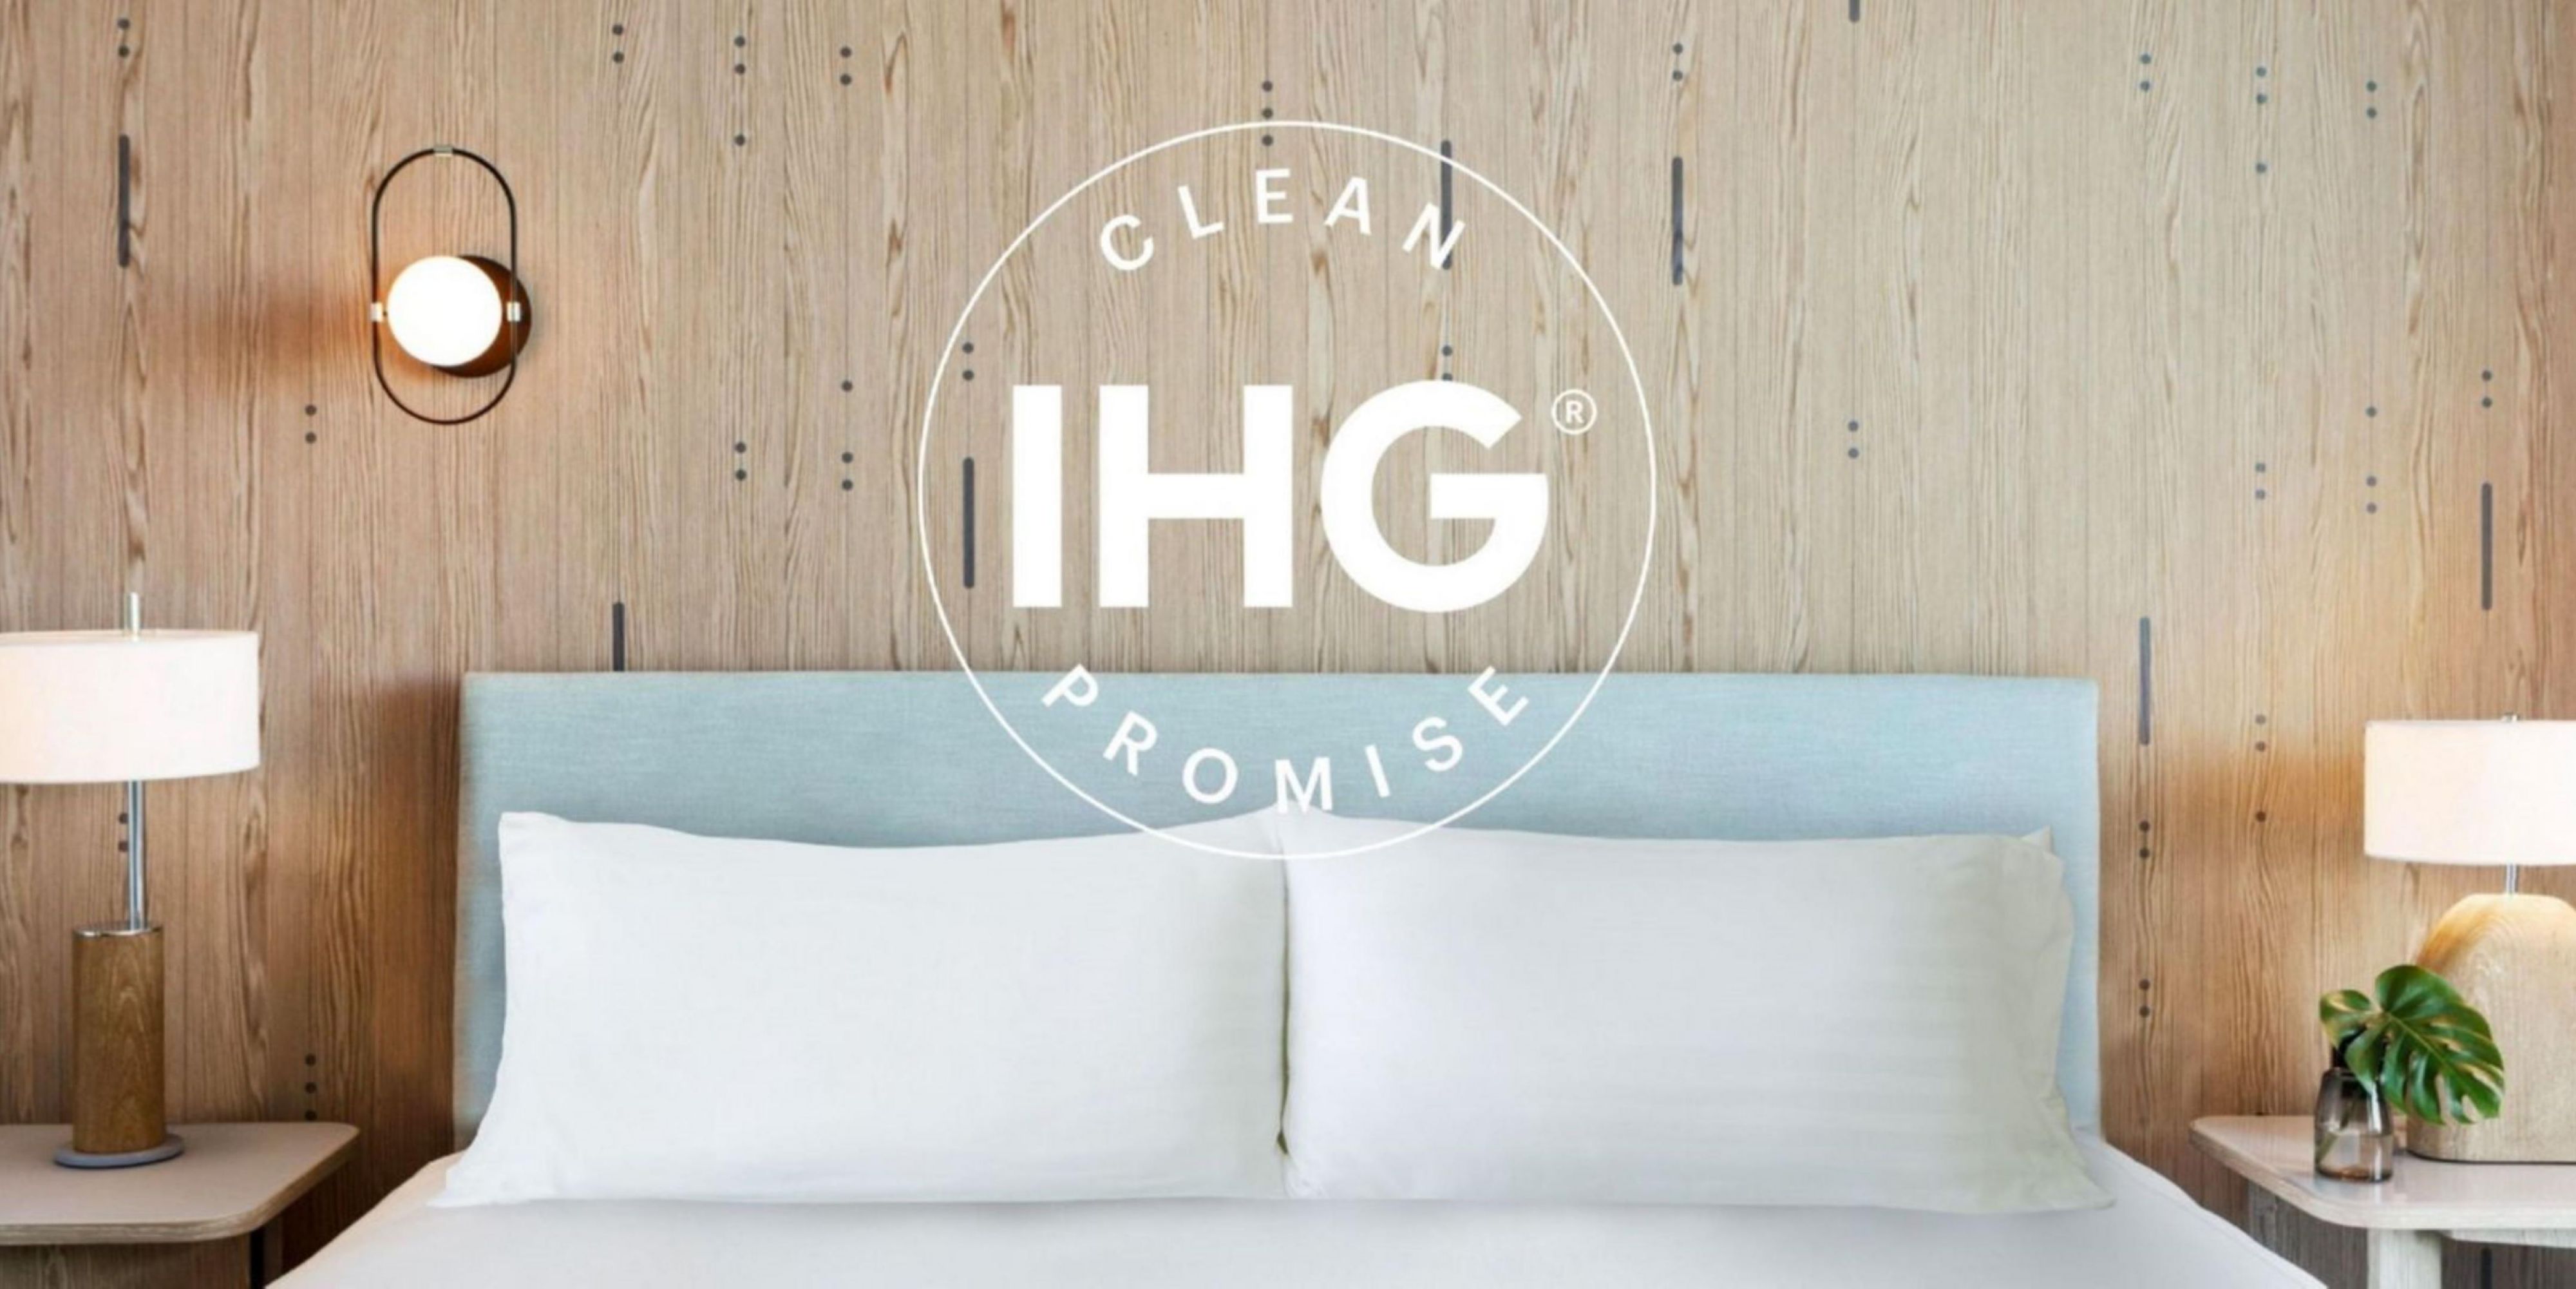 Mit unserem IHG® Versprechen auf Sauberkeit versichern wir unseren Gästen: Gut ist nicht genug – wir verpflichten uns zu höchster Sauberkeit. Das bedeutet saubere, gewartete und aufgeräumte Zimmer, die unseren Standards entsprechen. Wenn Sie dies beim Check-in nicht vorfinden, werden wir uns sofort darum kümmern.